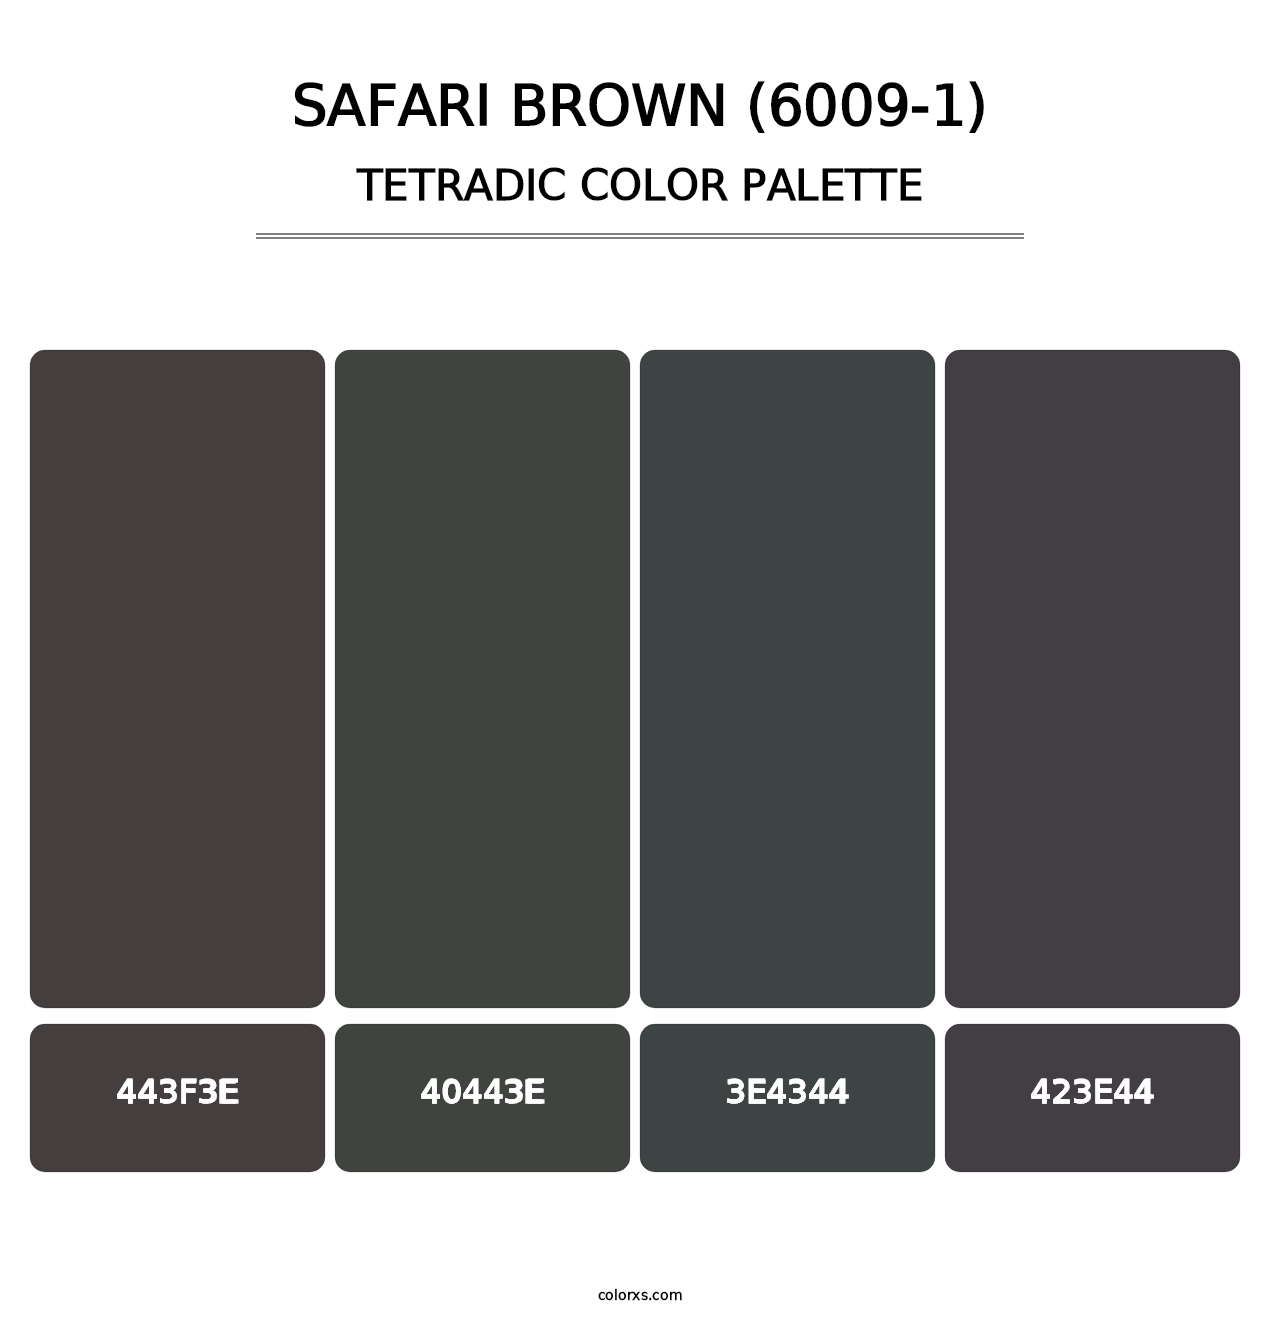 Safari Brown (6009-1) - Tetradic Color Palette